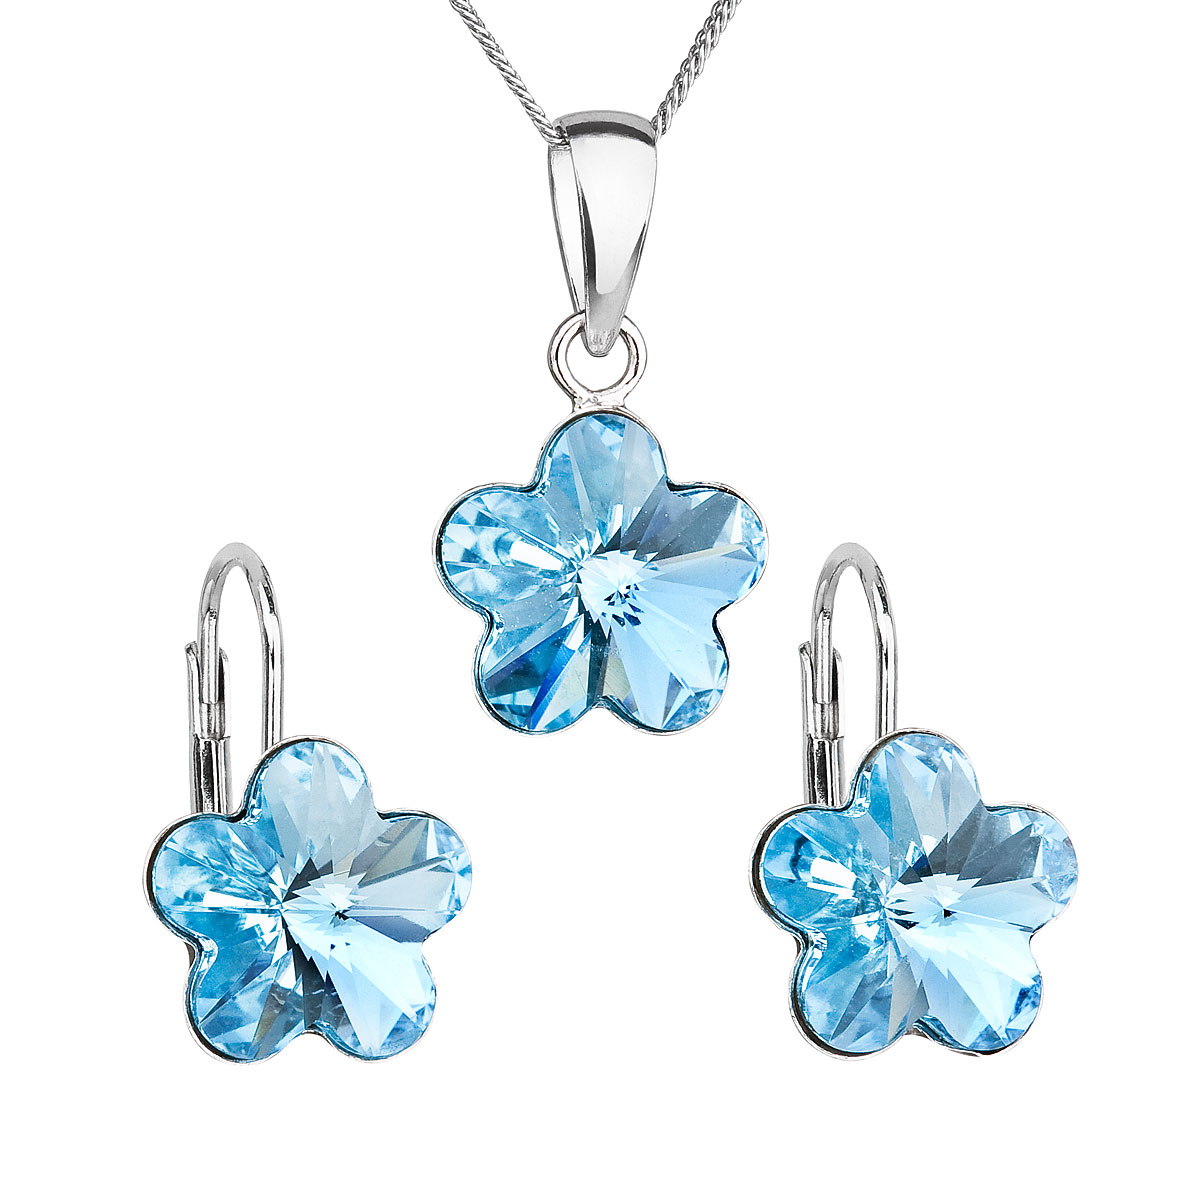 Evolution Group Sada šperků s krystaly Swarovski náušnice, řetízek a přívěsek modrá kytička 39143.3